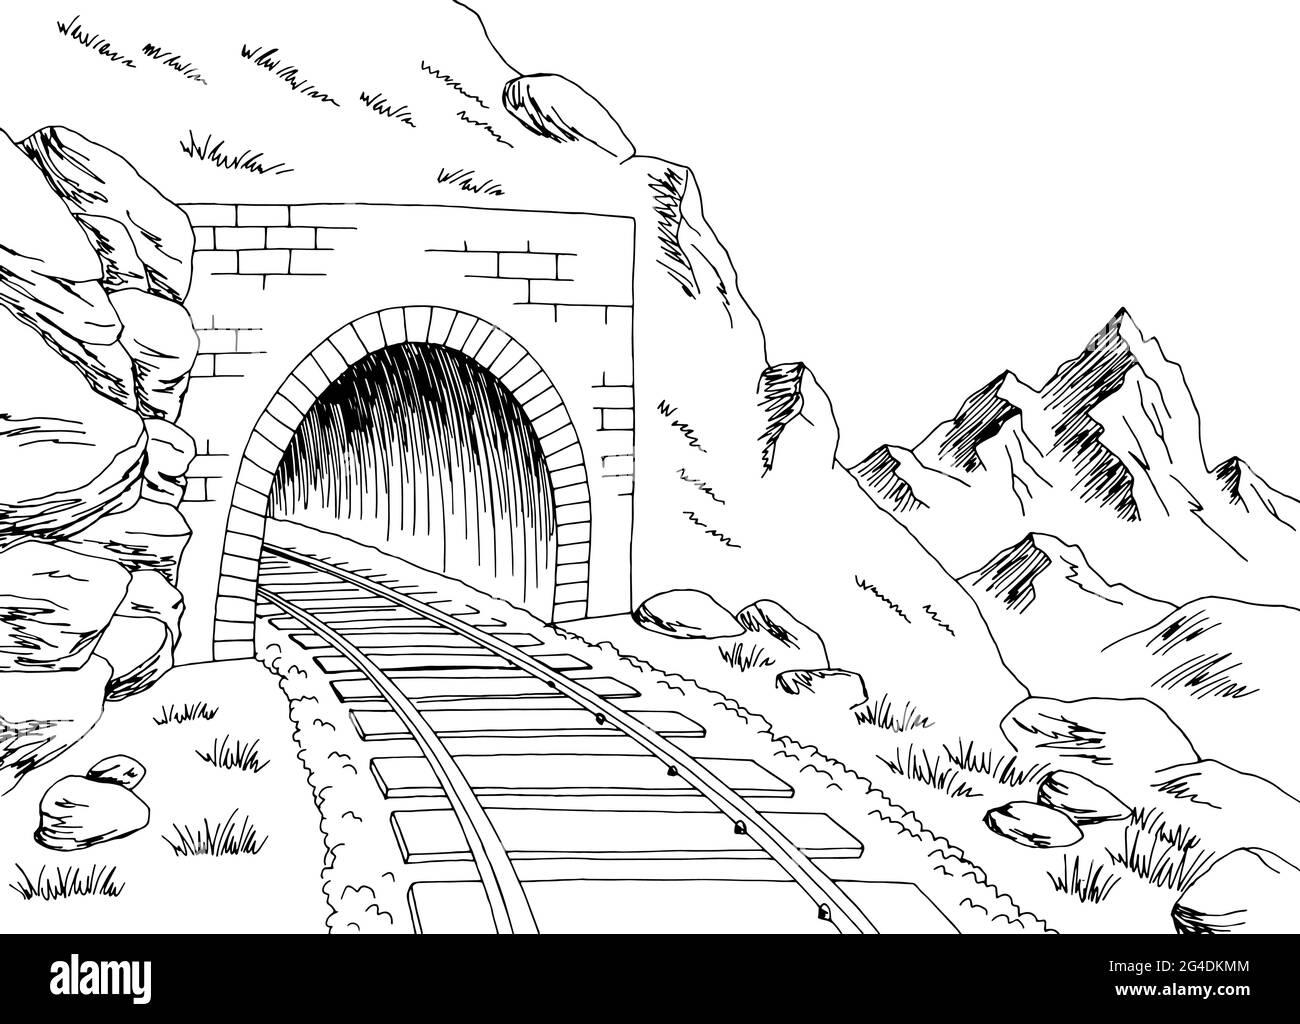 Train tunnel mountain railroad graphic black white landscape sketch illustration vector Stock Vector